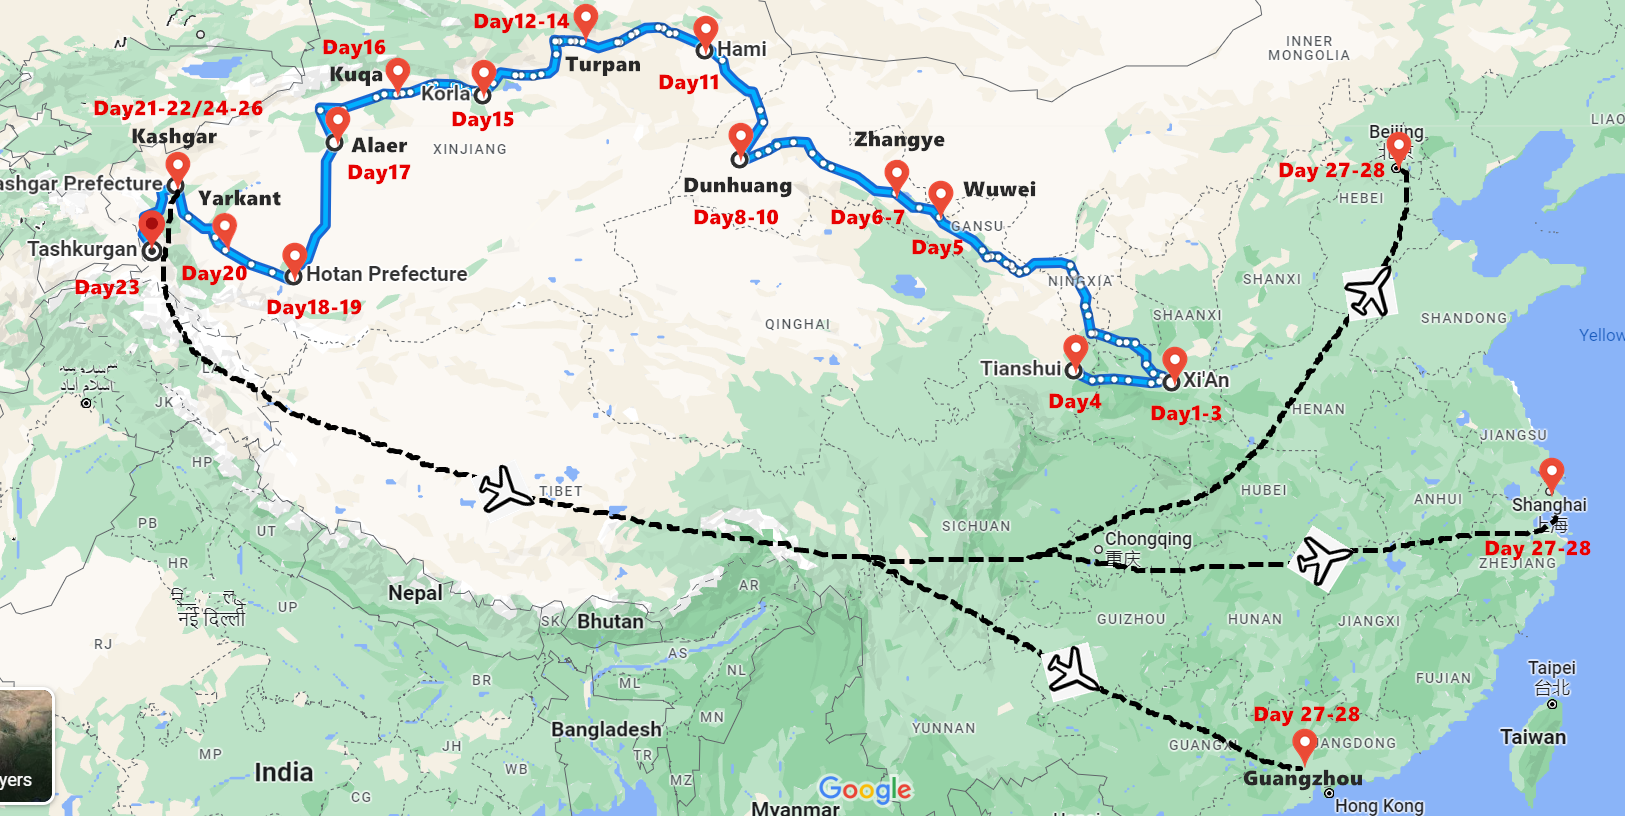 28 Days Silk Road Tour to Xi'an, Gansu and Xinjiang by Luxurious Coach Travel Map